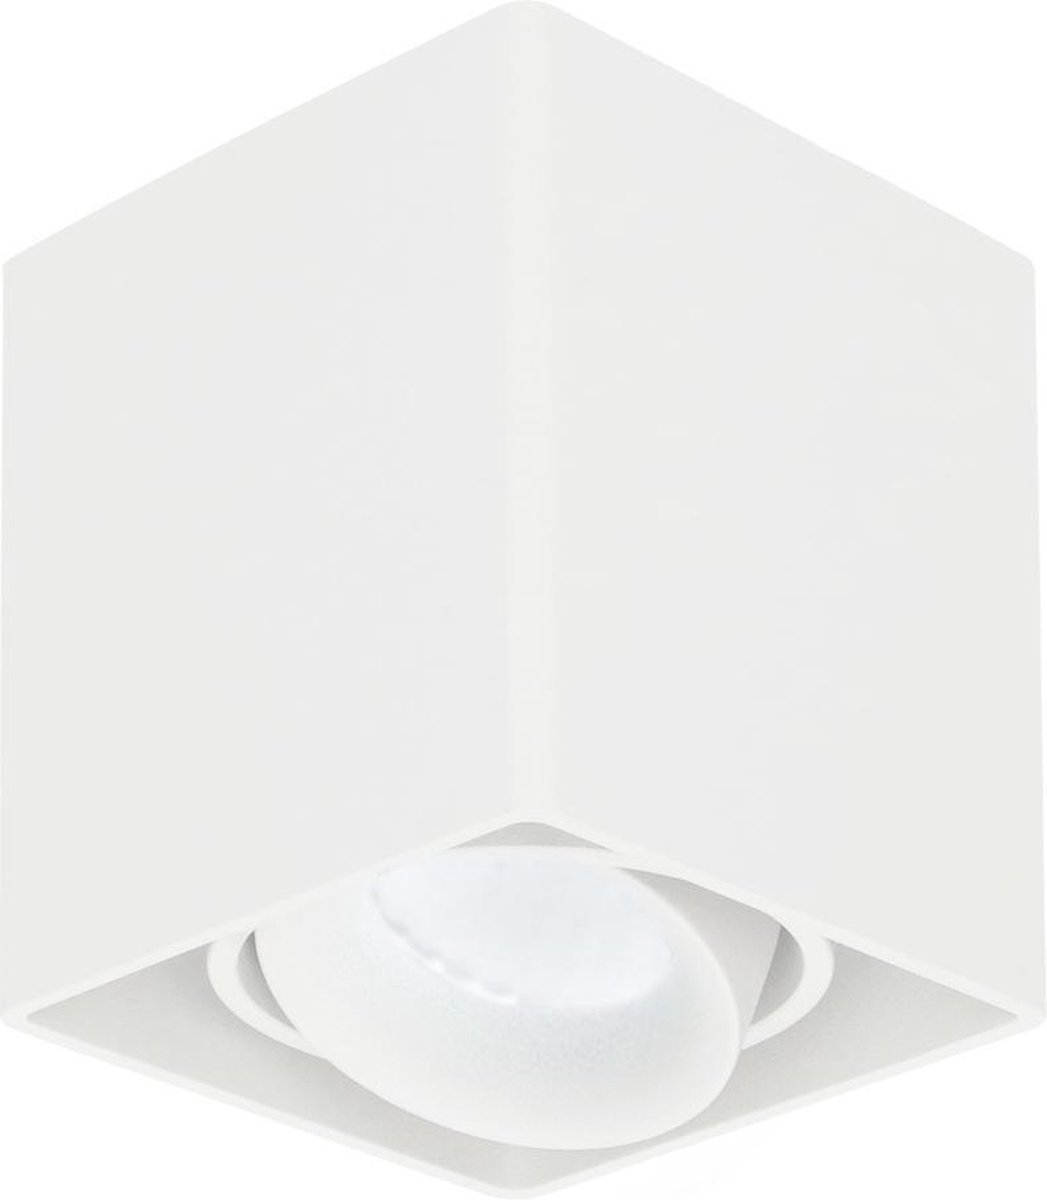 HOFTRONIC Esto - Plafondspot Wit Opbouw - Kantelbaar en Dimbaar - Verwisselbare GU10 Spot - 5000K Daglicht wit - 5 Watt 400 lumen - 95x95x105mm - IP20 voor woonkamer, slaapkamer en gang - Plafondverlichting binnen